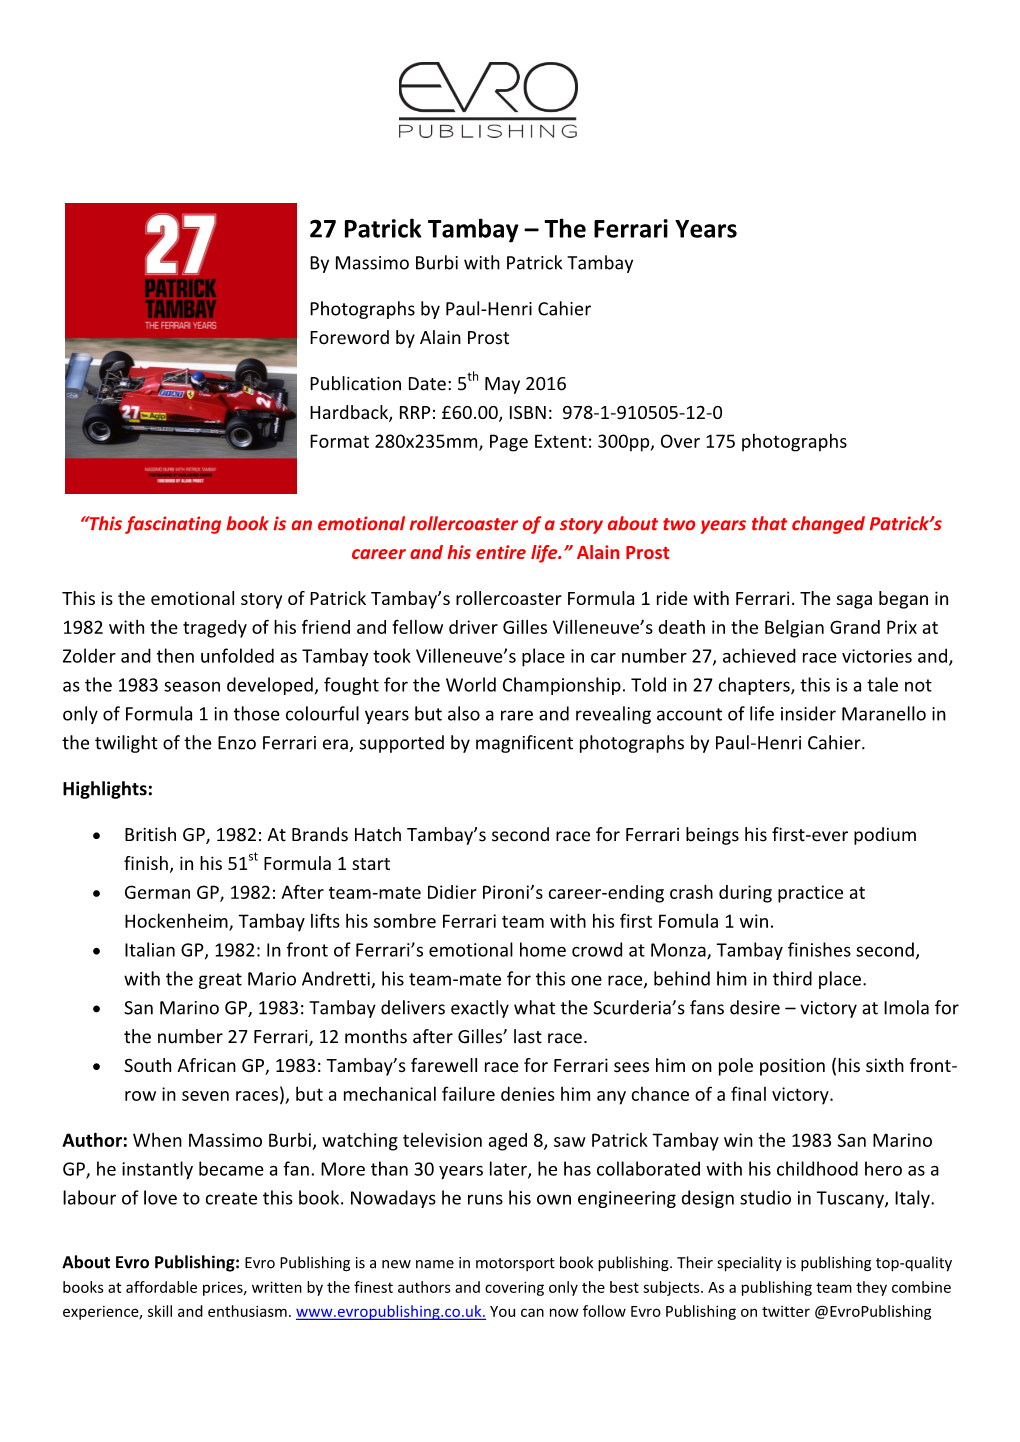 27 Patrick Tambay – the Ferrari Years by Massimo Burbi with Patrick Tambay